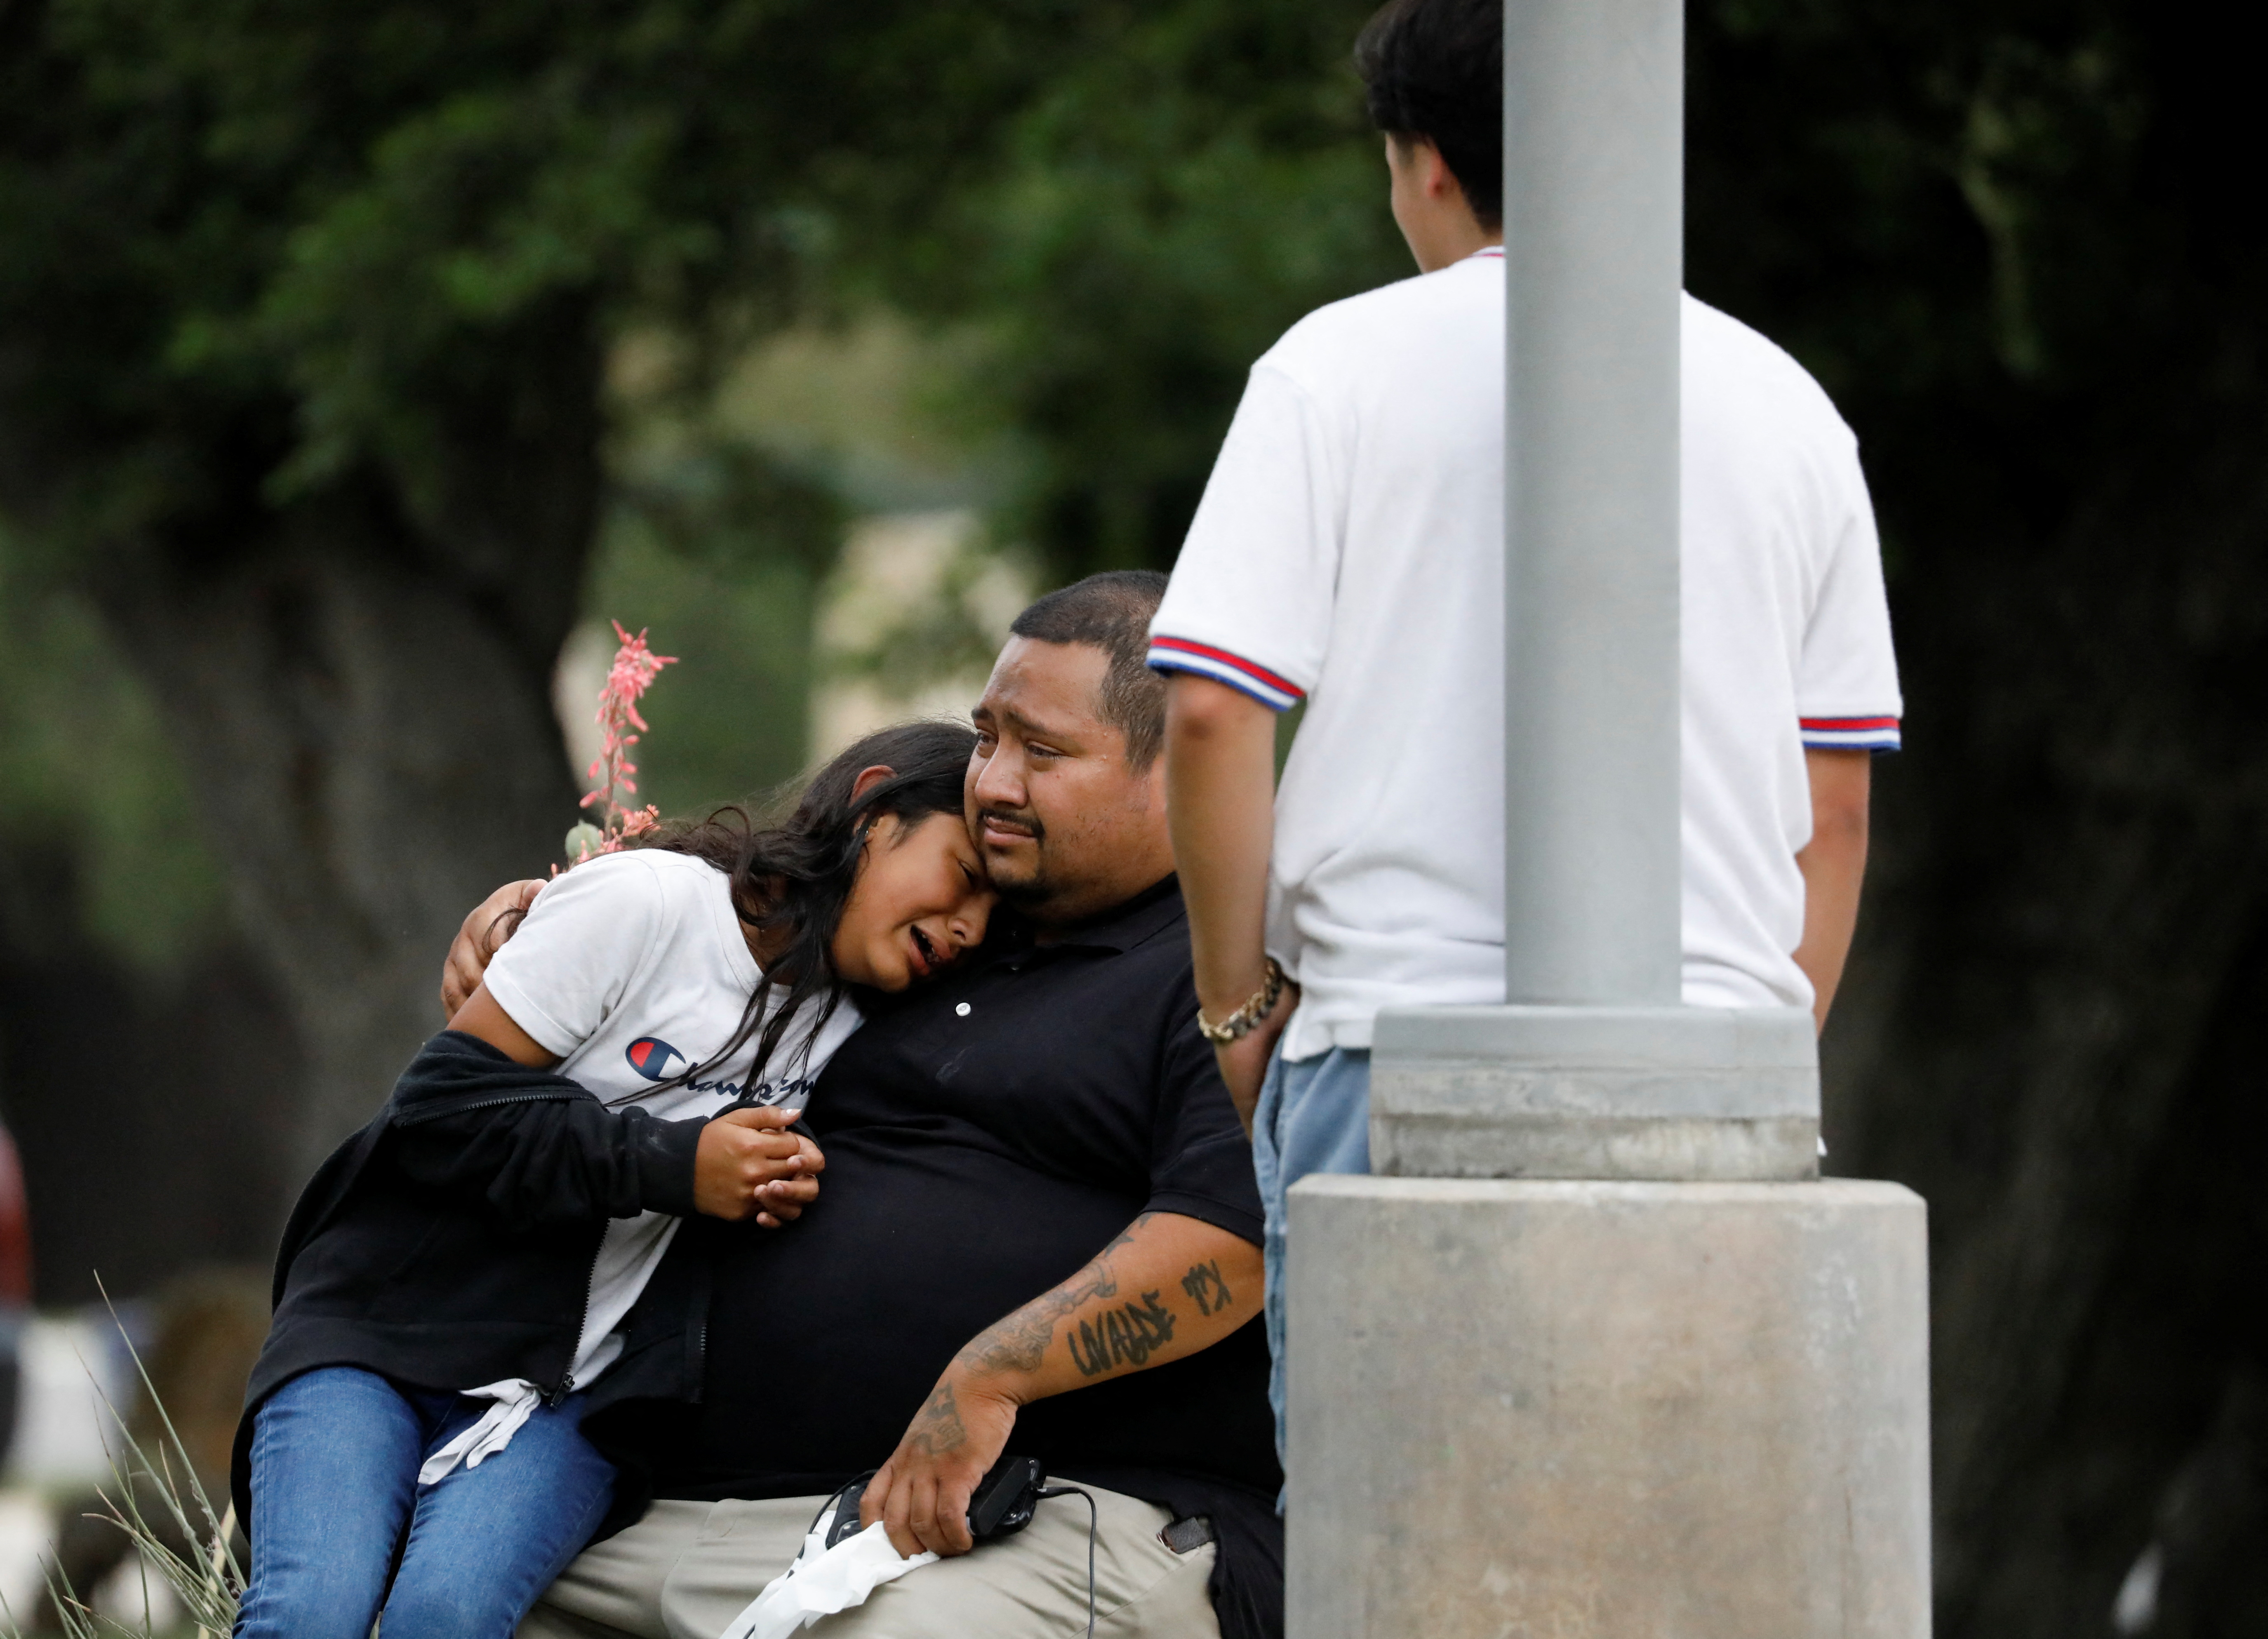 La gente reacciona fuera del Centro Cívico Ssgt Willie de Leon, donde los estudiantes habían sido transportados desde la Escuela Primaria Robb después de un tiroteo, en Uvalde, Texas (Reuters)